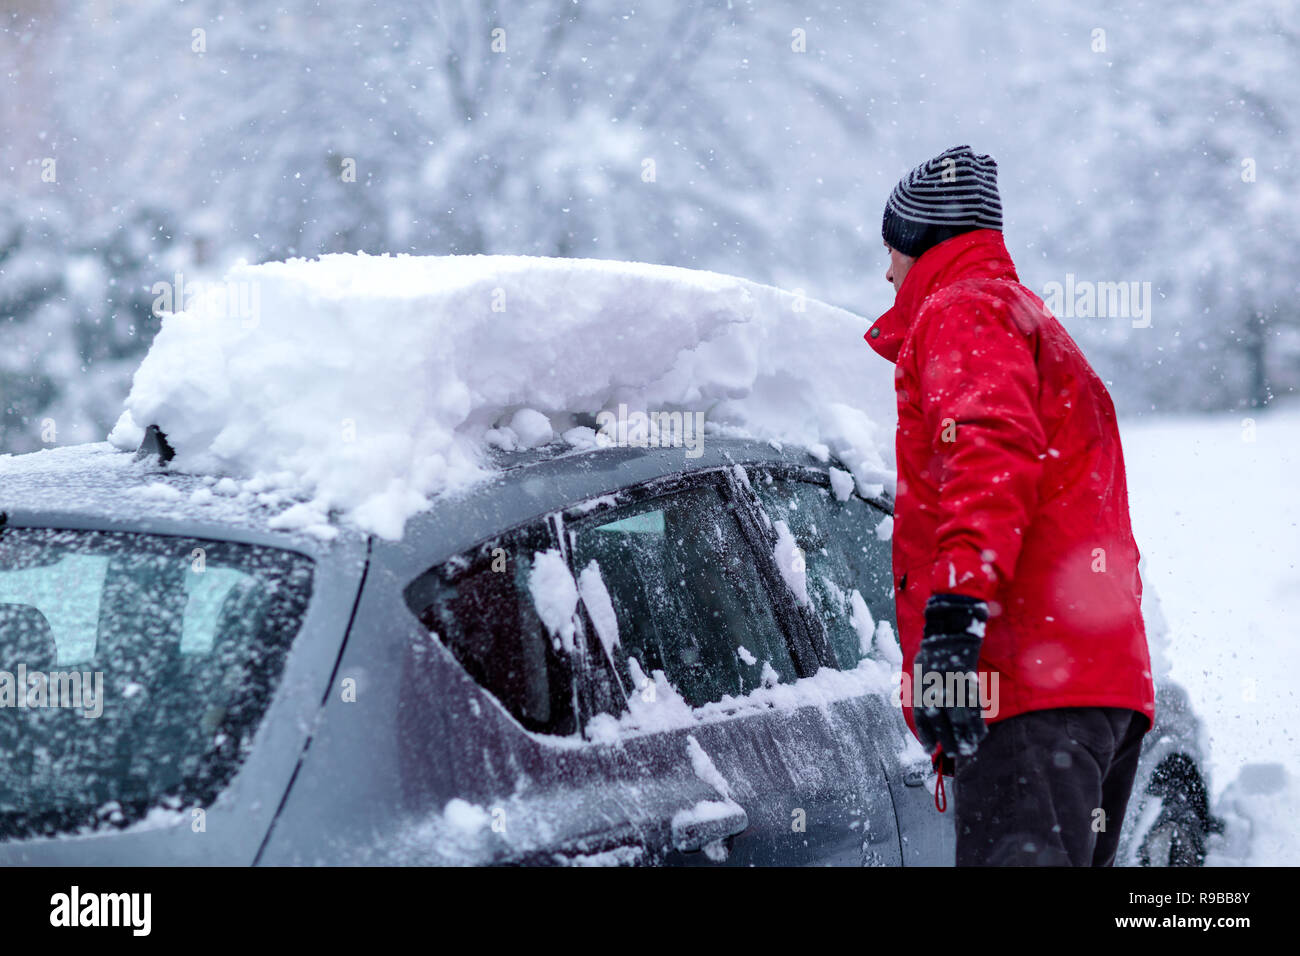 Jeune homme est le nettoyage nettoyer sa voiture de la couverture de neige à l'aide d'un pinceau. Parking couvert de neige. La neige lourde voiture nettoyage sous la neige des chutes de neige importantes. Banque D'Images